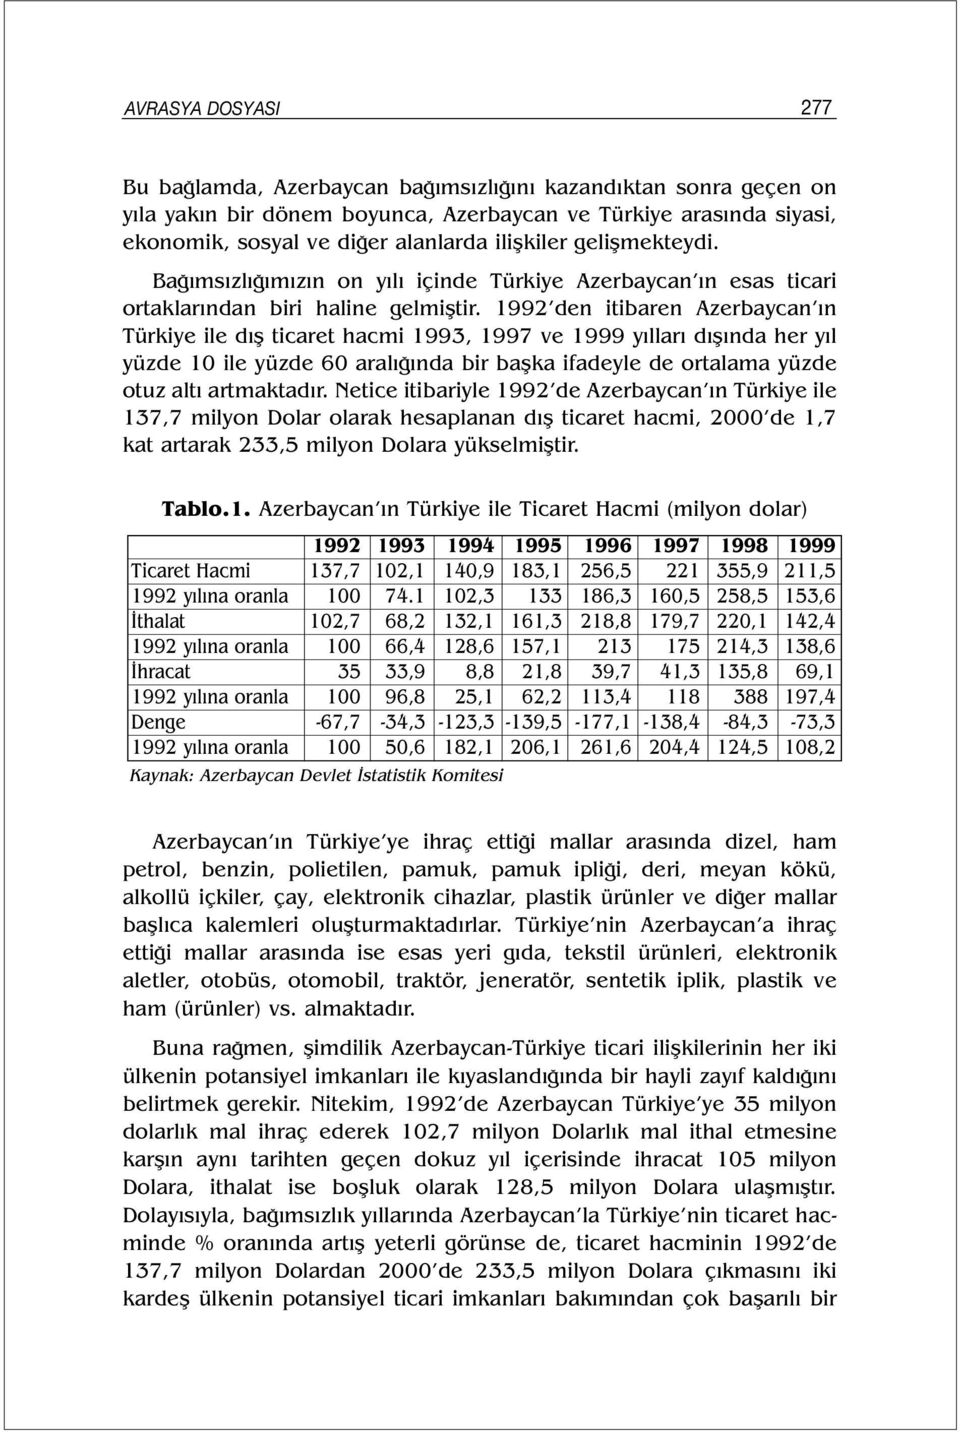 1992 den itibaren Azerbaycan ın Türkiye ile dış ticaret hacmi 1993, 1997 ve 1999 yılları dışında her yıl yüzde 10 ile yüzde 60 aralığında bir başka ifadeyle de ortalama yüzde otuz altı artmaktadır.